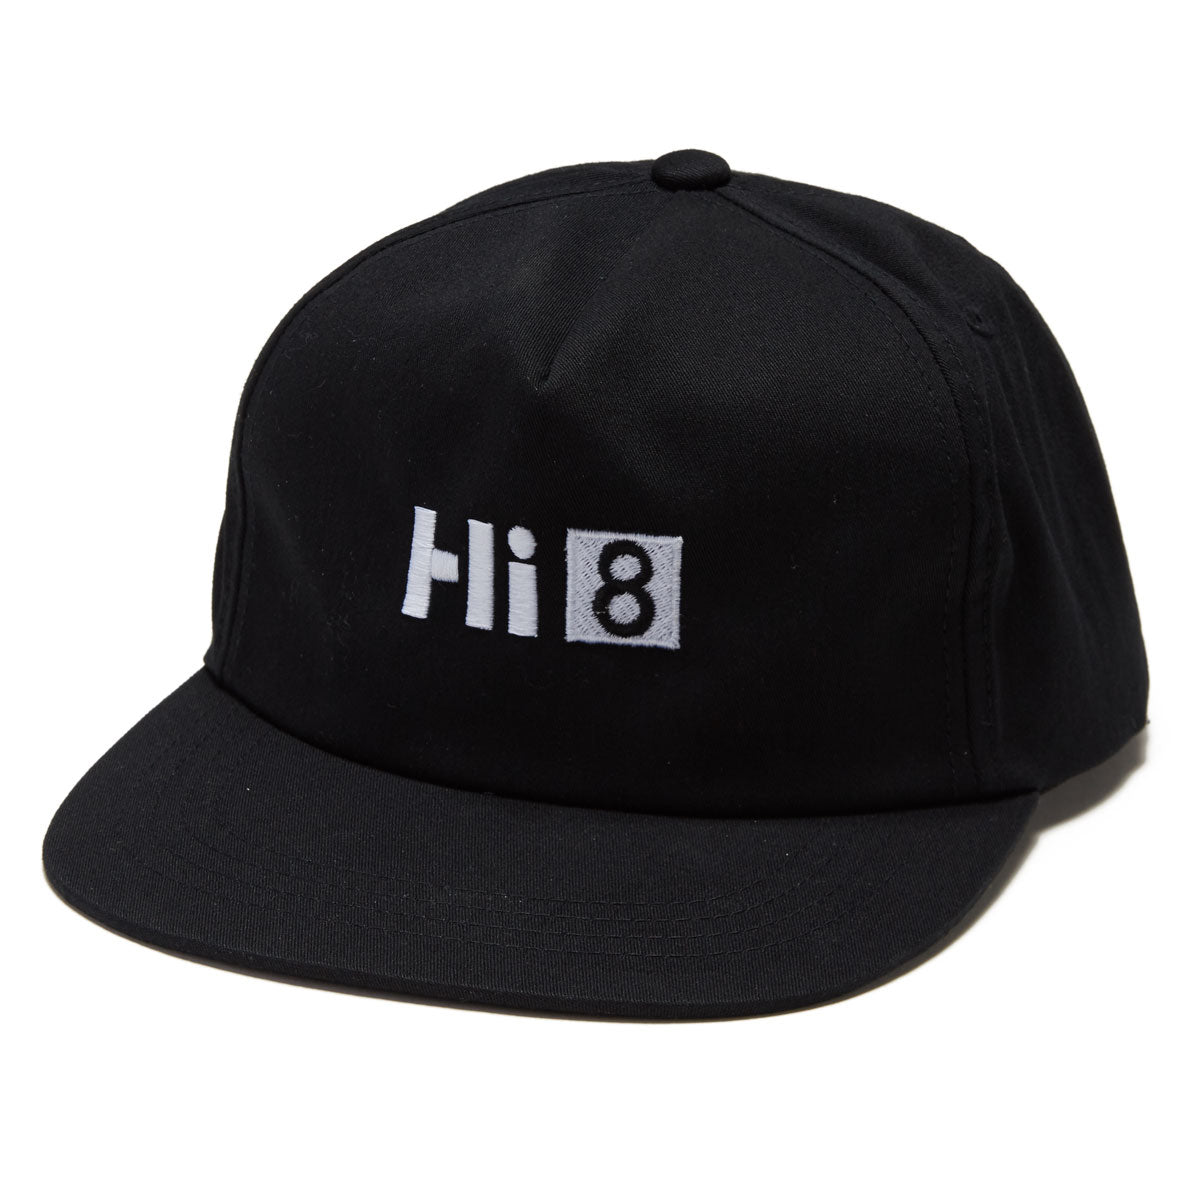 AM-FM HI8 Snapback Hat - Black image 1